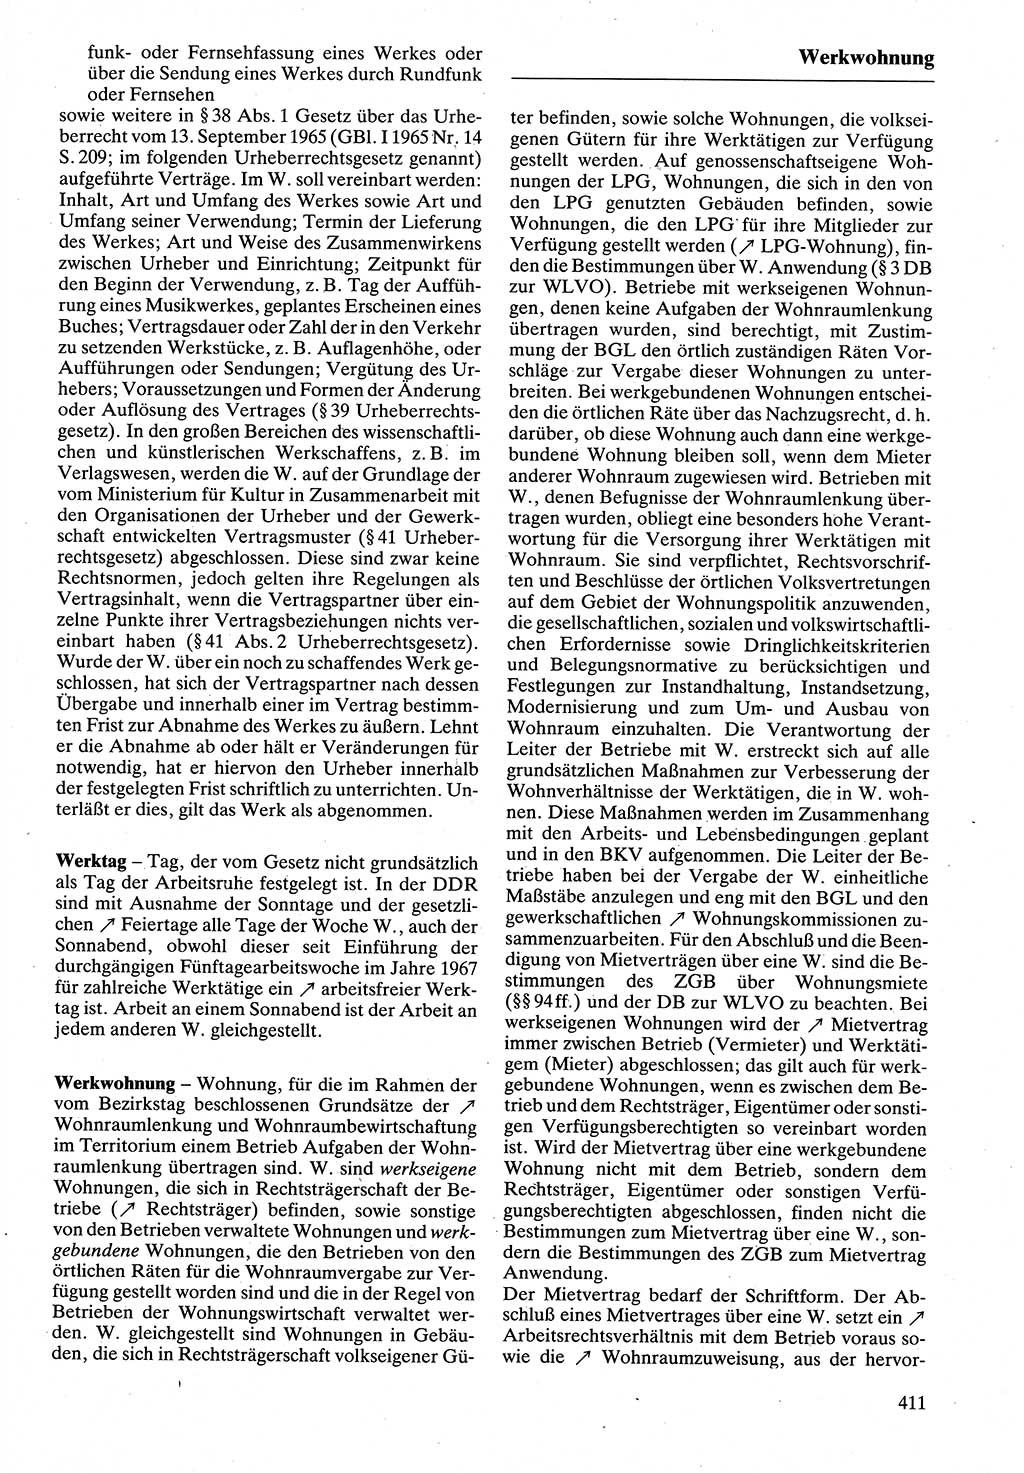 Rechtslexikon [Deutsche Demokratische Republik (DDR)] 1988, Seite 411 (Rechtslex. DDR 1988, S. 411)